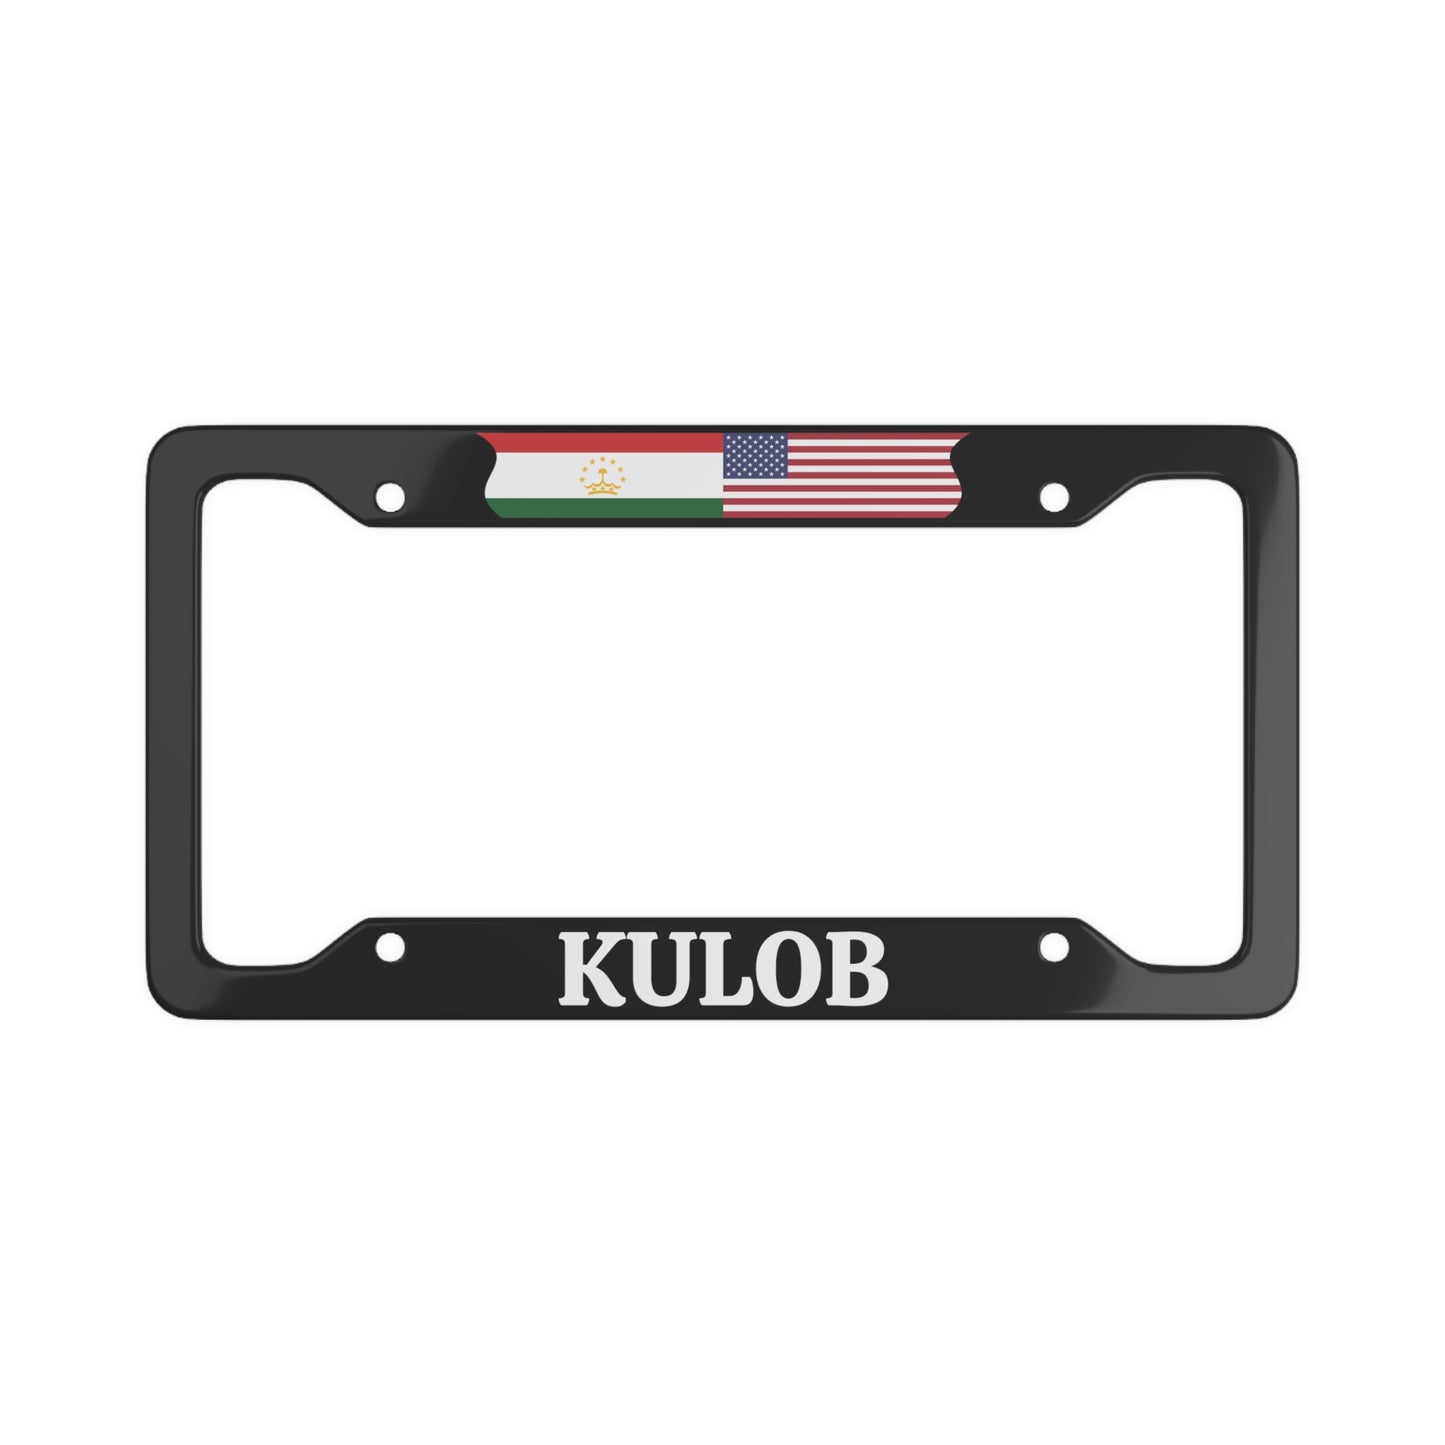 Kulob TJK License Plate Frame